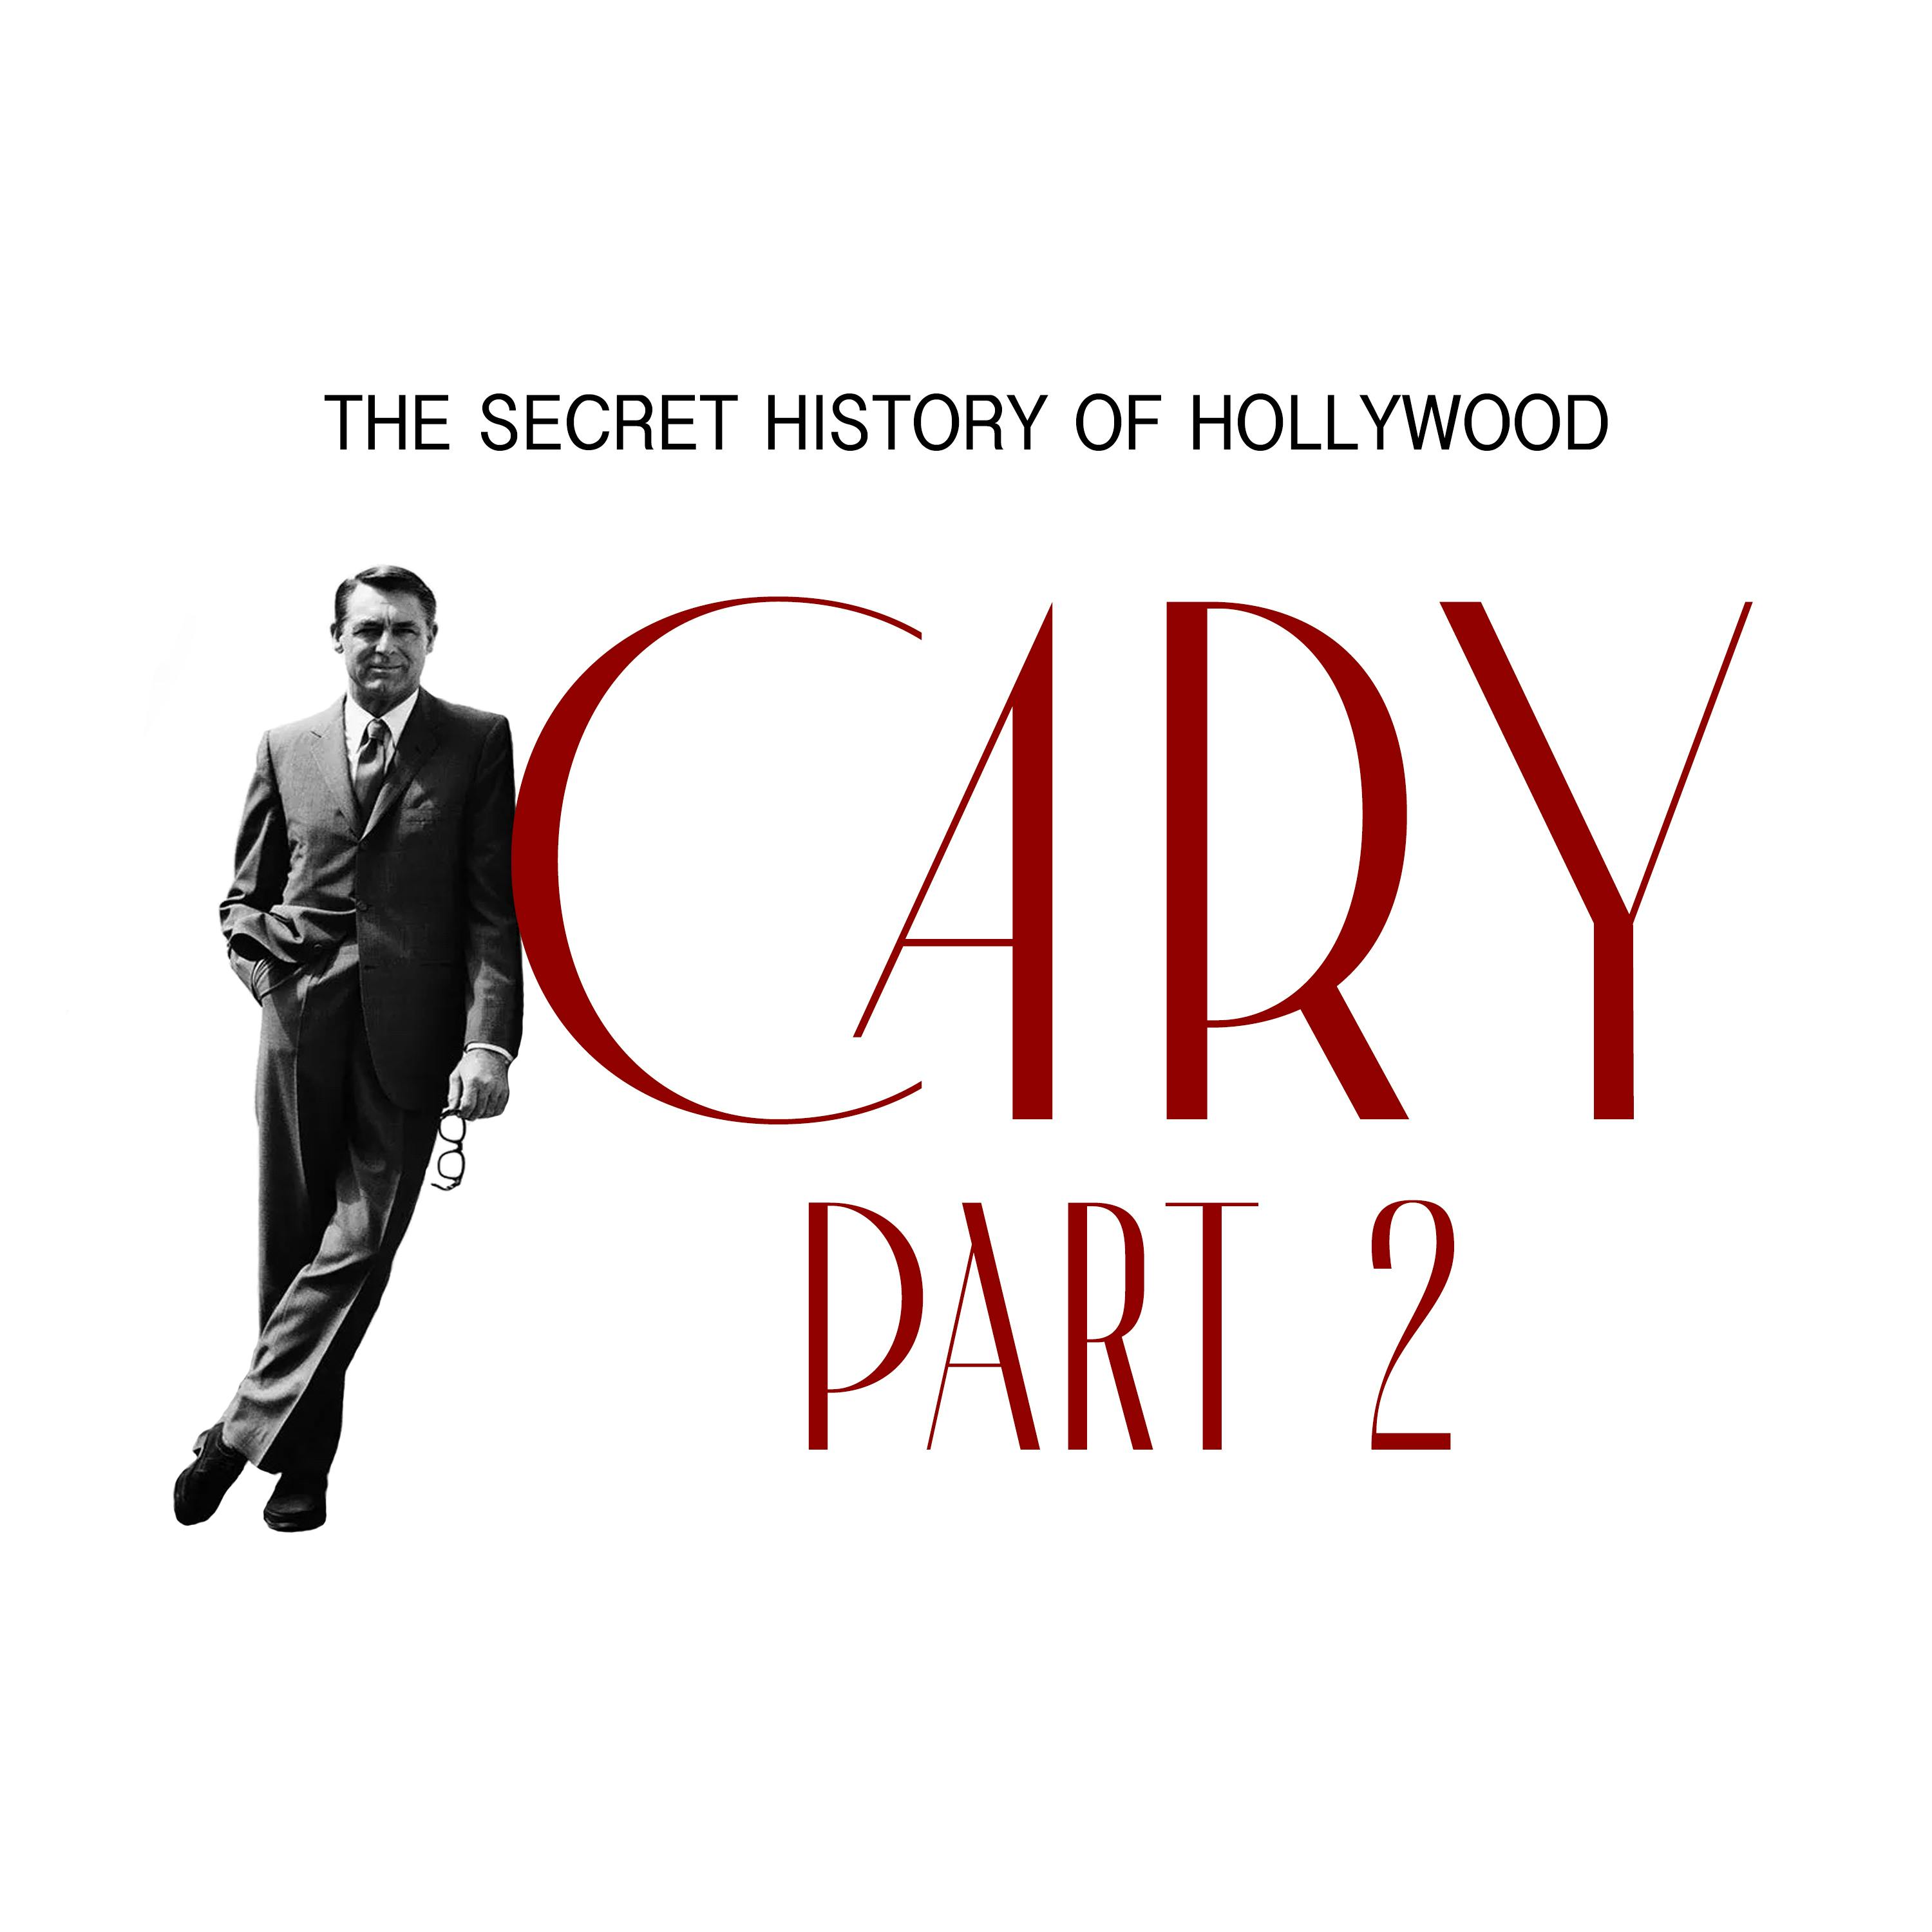 Cary: Part 2 - Vol II